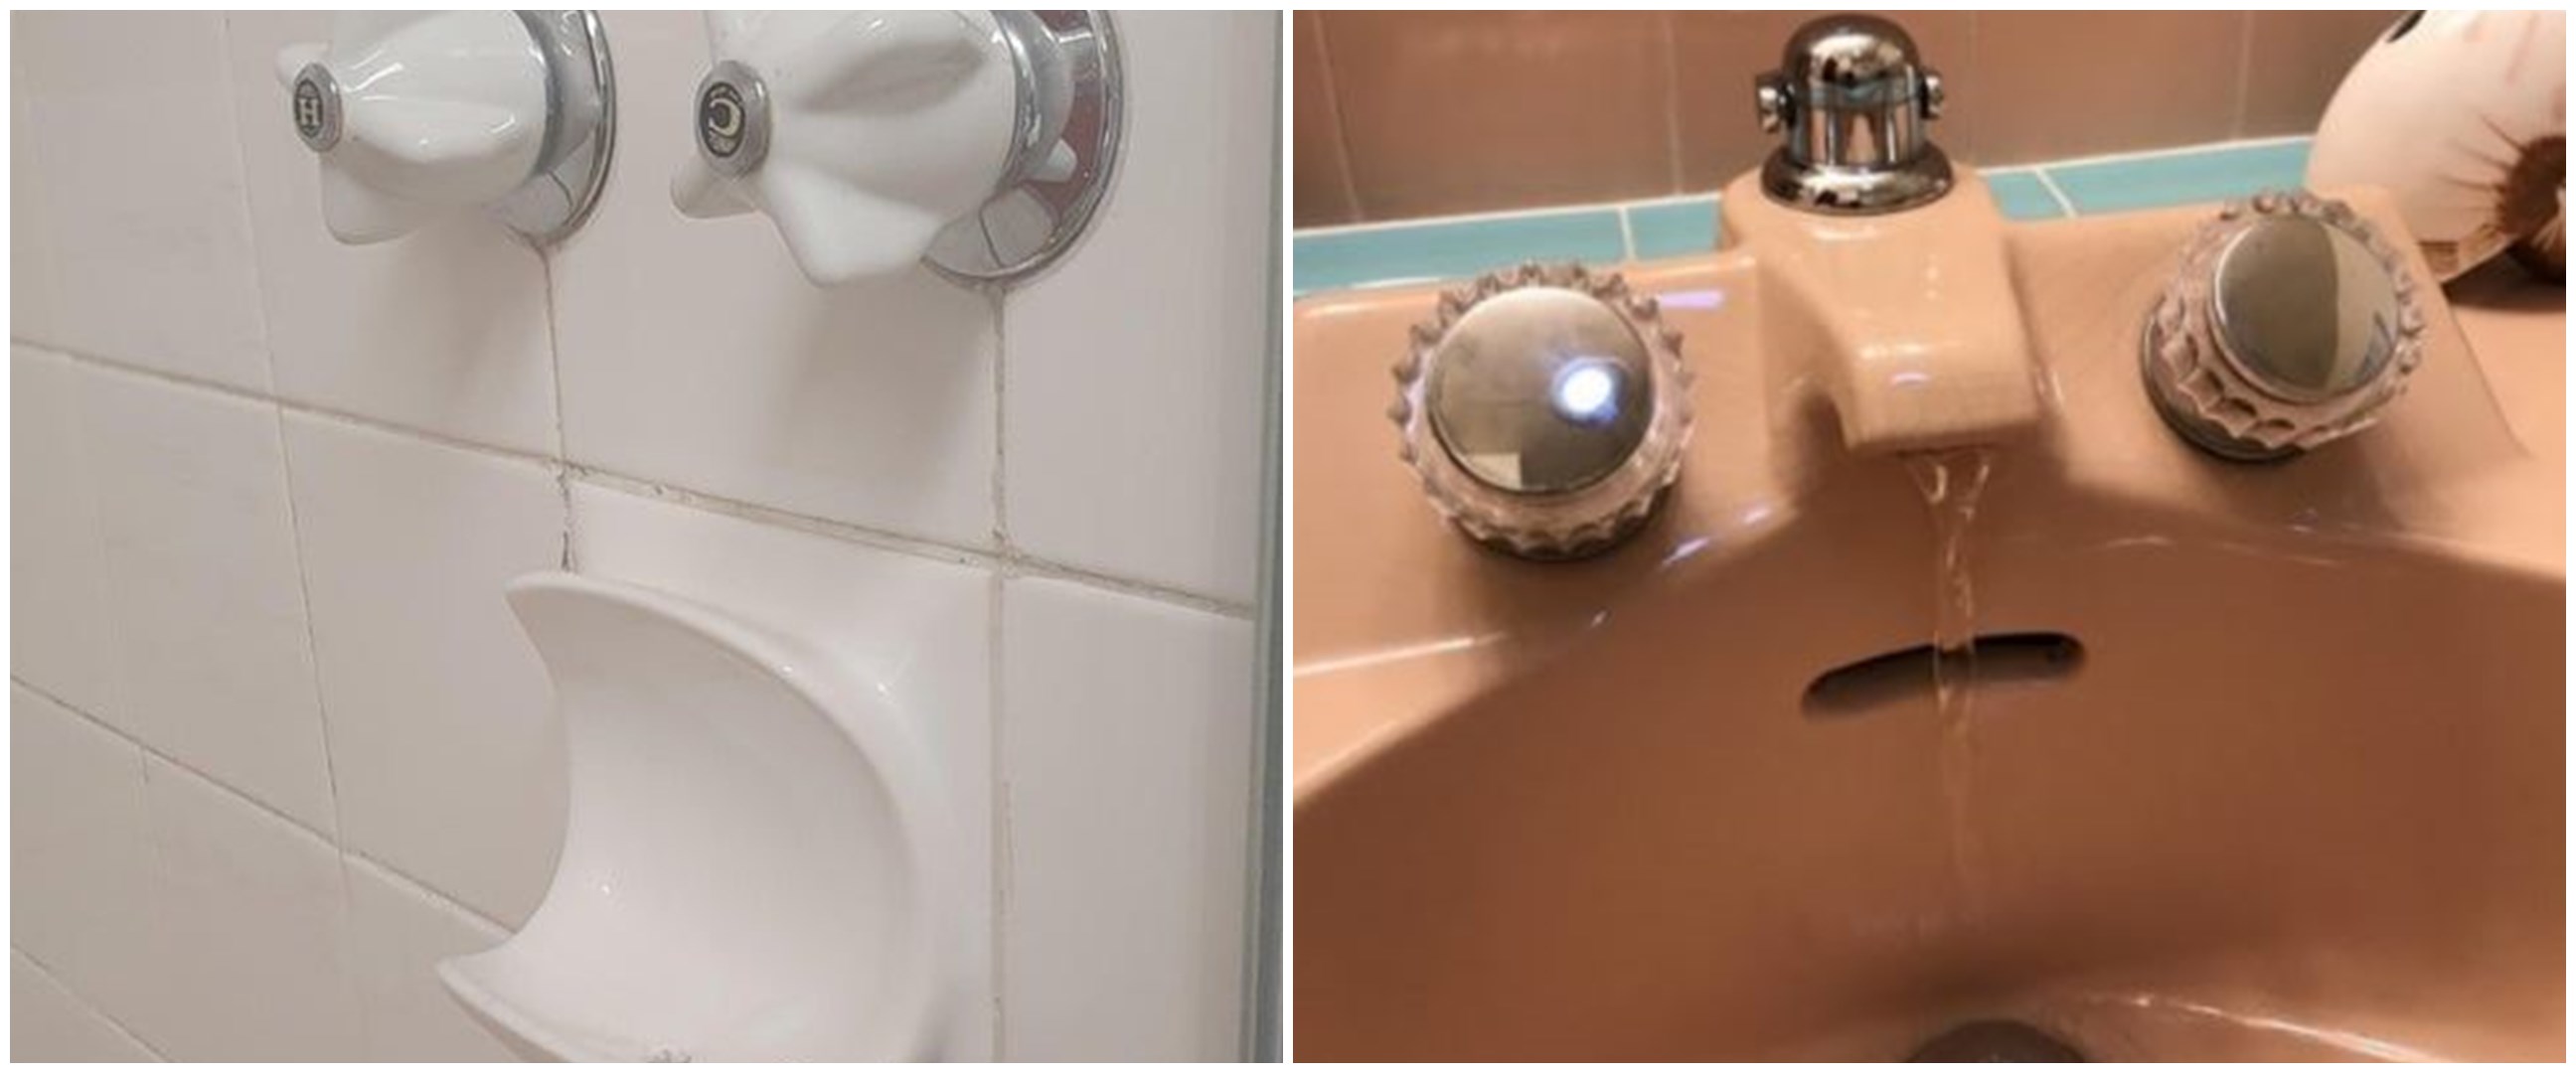 10 Desain benda di kamar mandi menyerupai wajah, bikin kedip dua kali